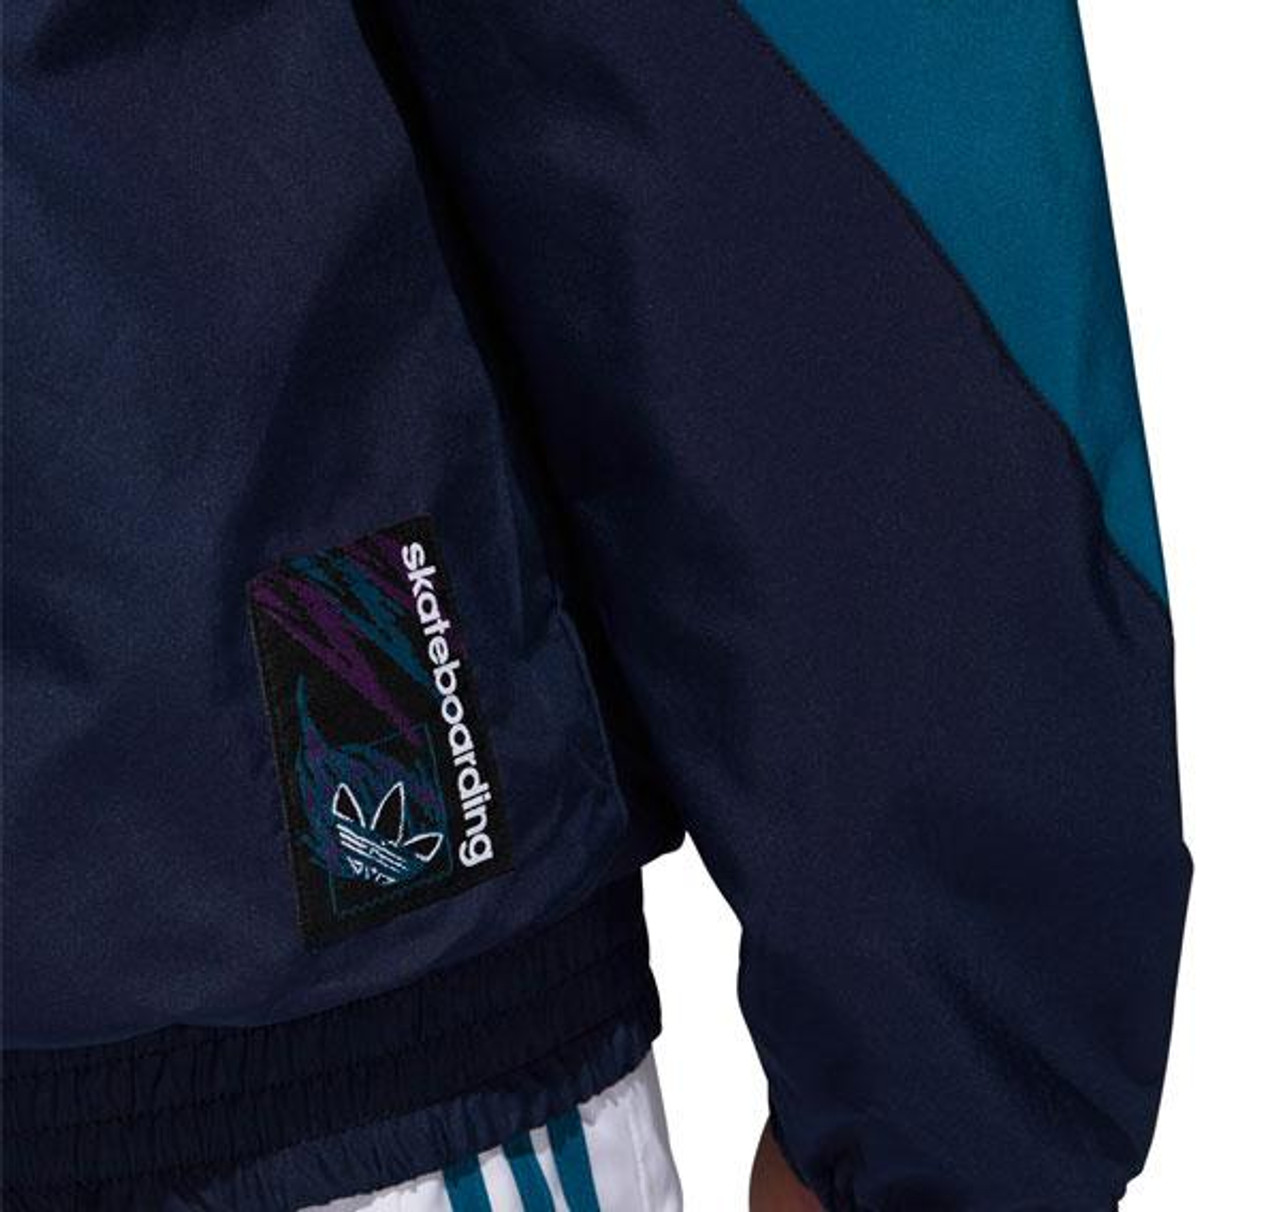 Adidas Court Jacket White Navy